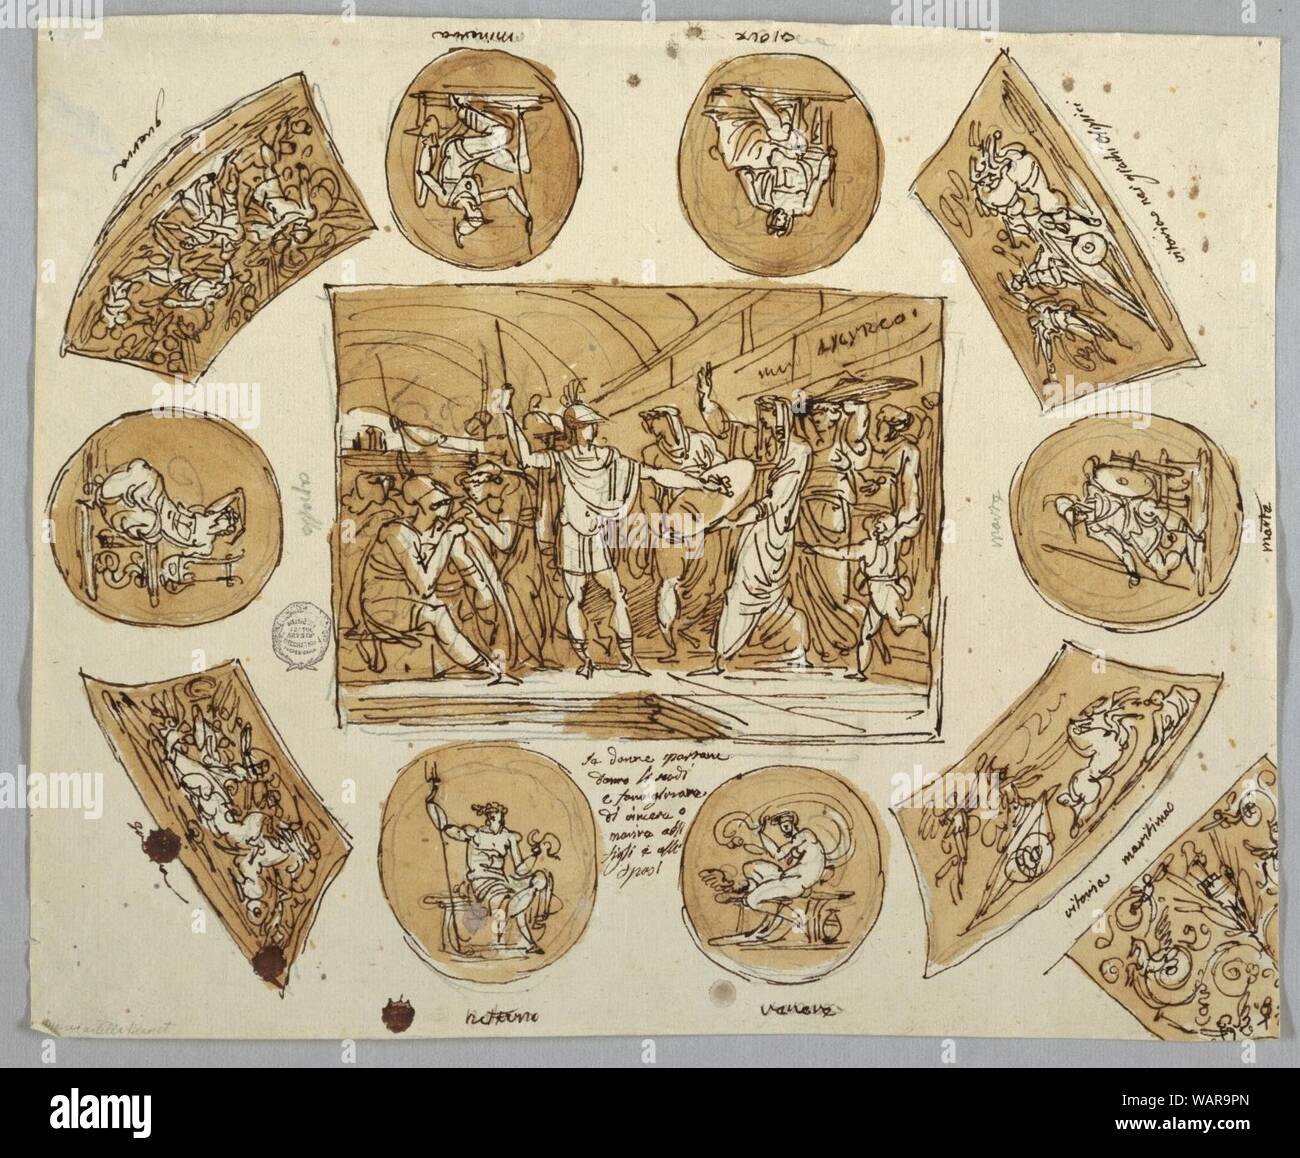 Dessin, Conception pour plafond avec femmes spartiates en panneau rectangulaire centrale, 1800-1810 Banque D'Images